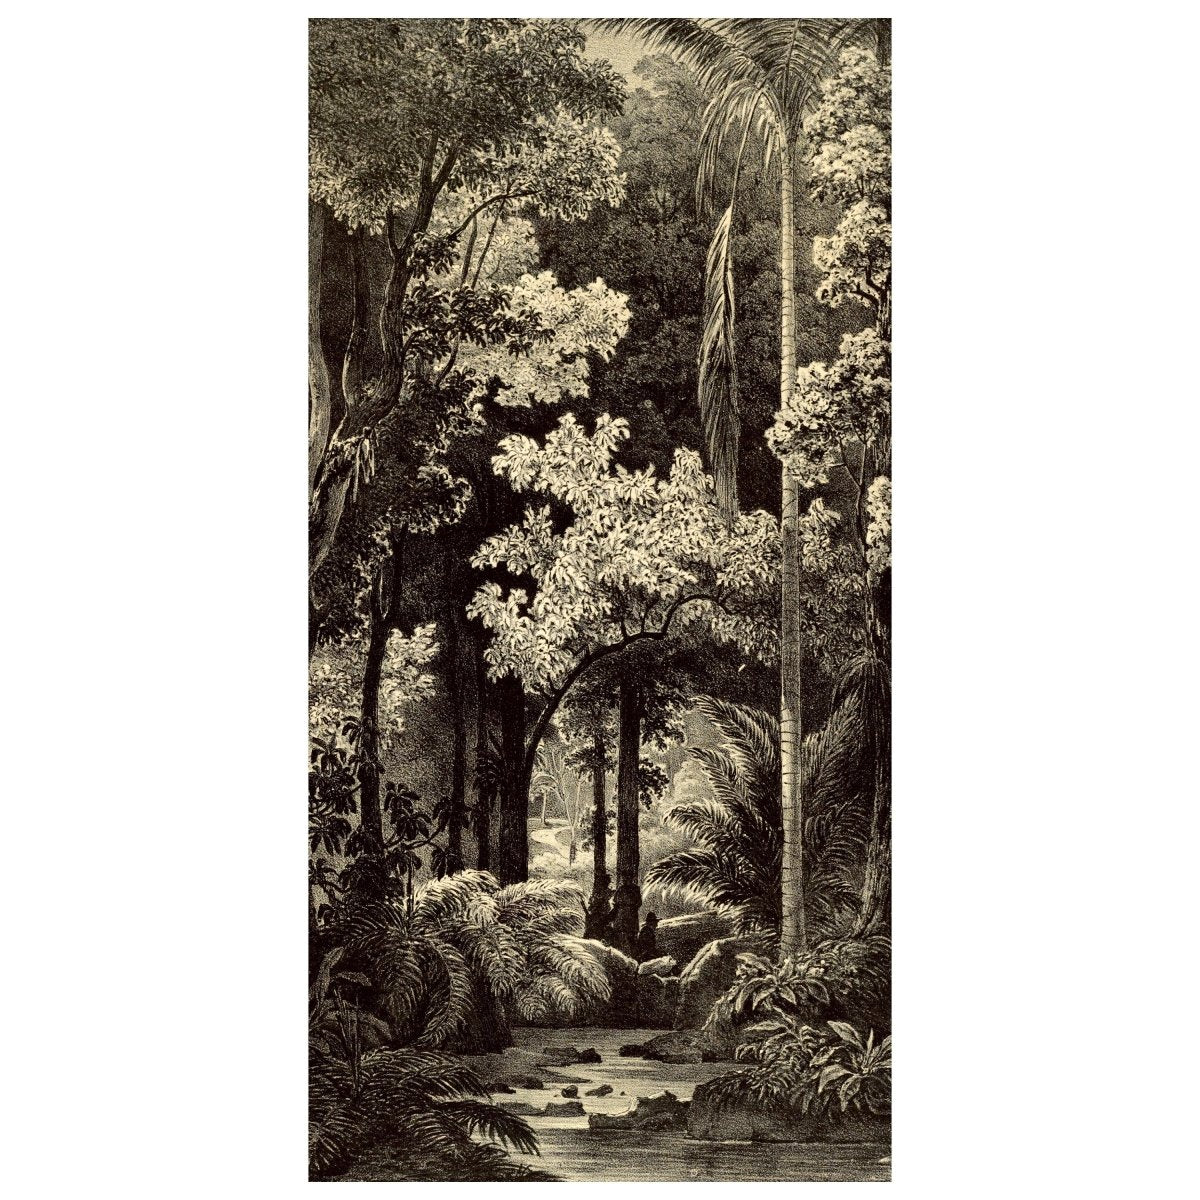 Türtapete Zeichnung Dschungel, Schwarz Weiß, Retro M1345 - Bild 2